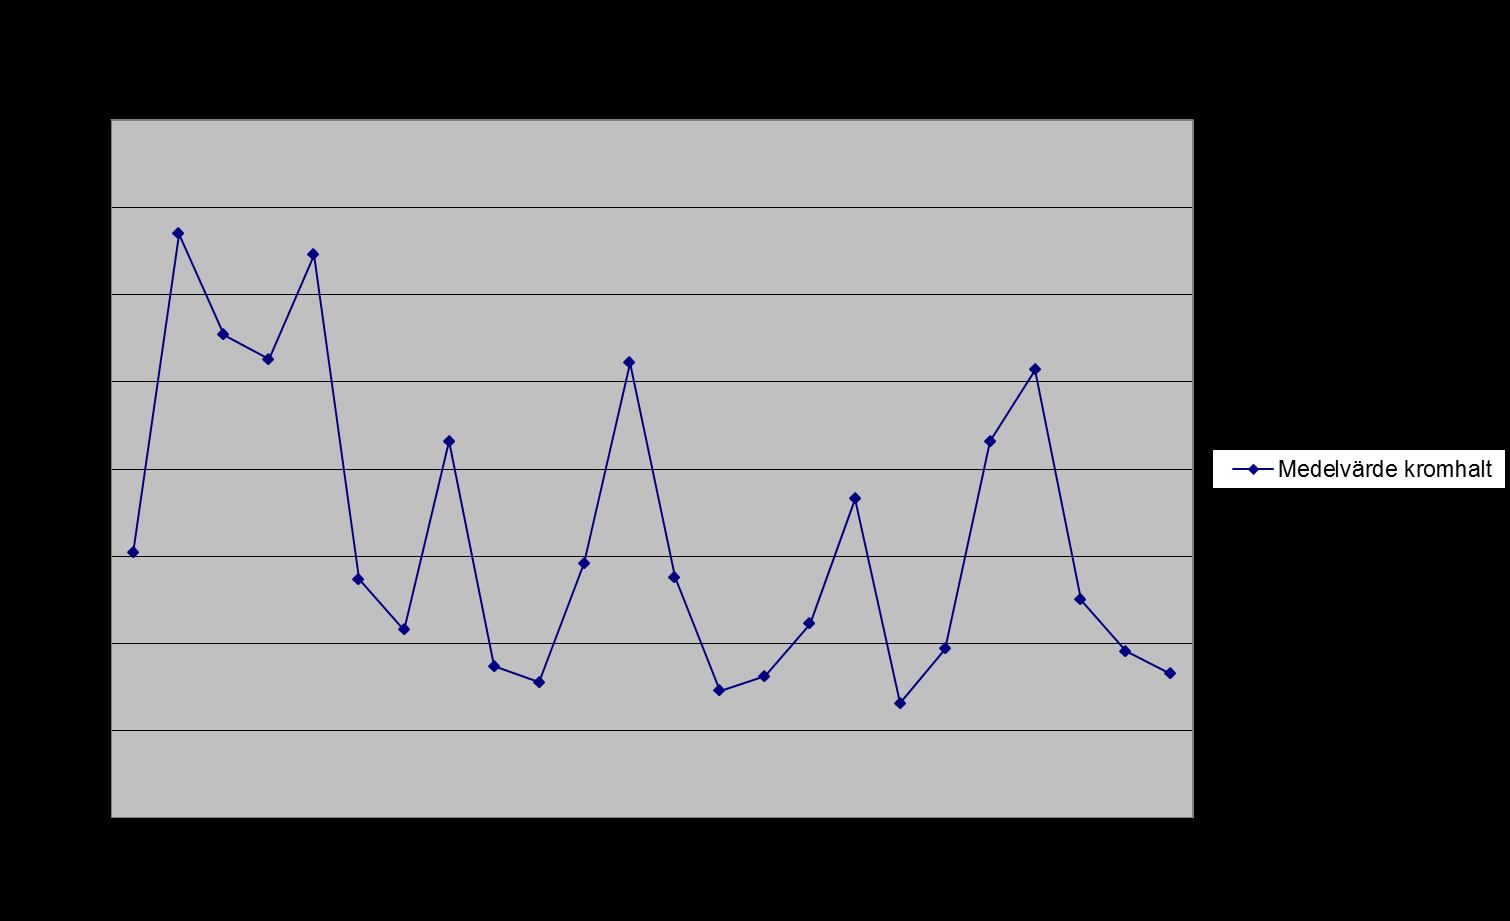 9(12) Krom Huvudsaklig utsläppskälla: ScanDust. Medelvärdet för Landskrona 2011 var 0,83 µg/g och 2010 var det 0,96 g/g. Högst kromhalt under 2011 uppmättes i proven från Hydro. Diagram 10.